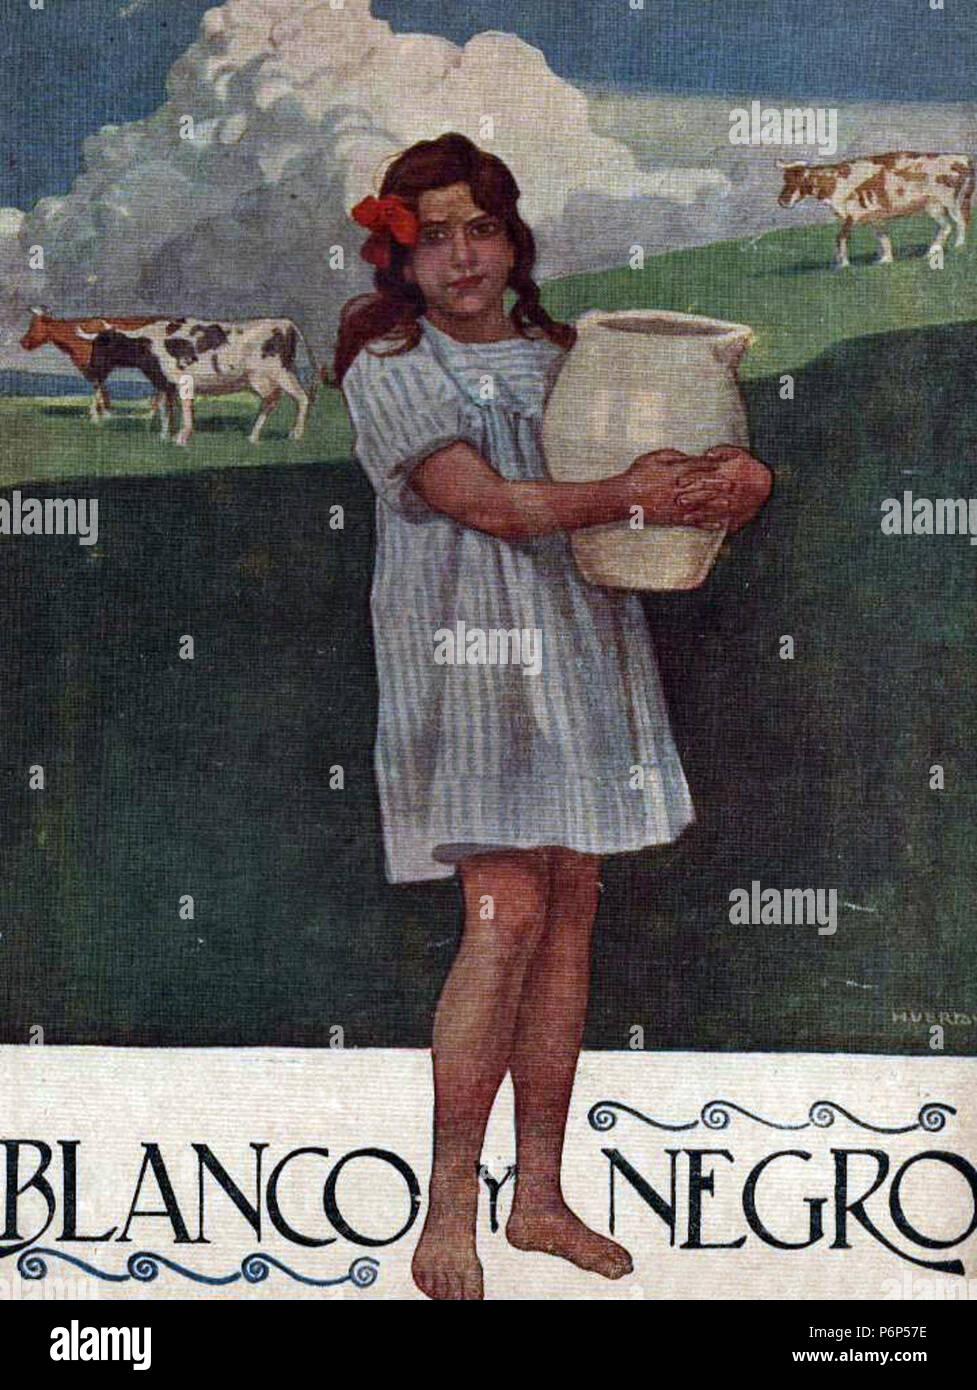 1920-09-19, Blanco y Negro, la Niña con cántaro de leche y vacas, Huertas. Foto Stock